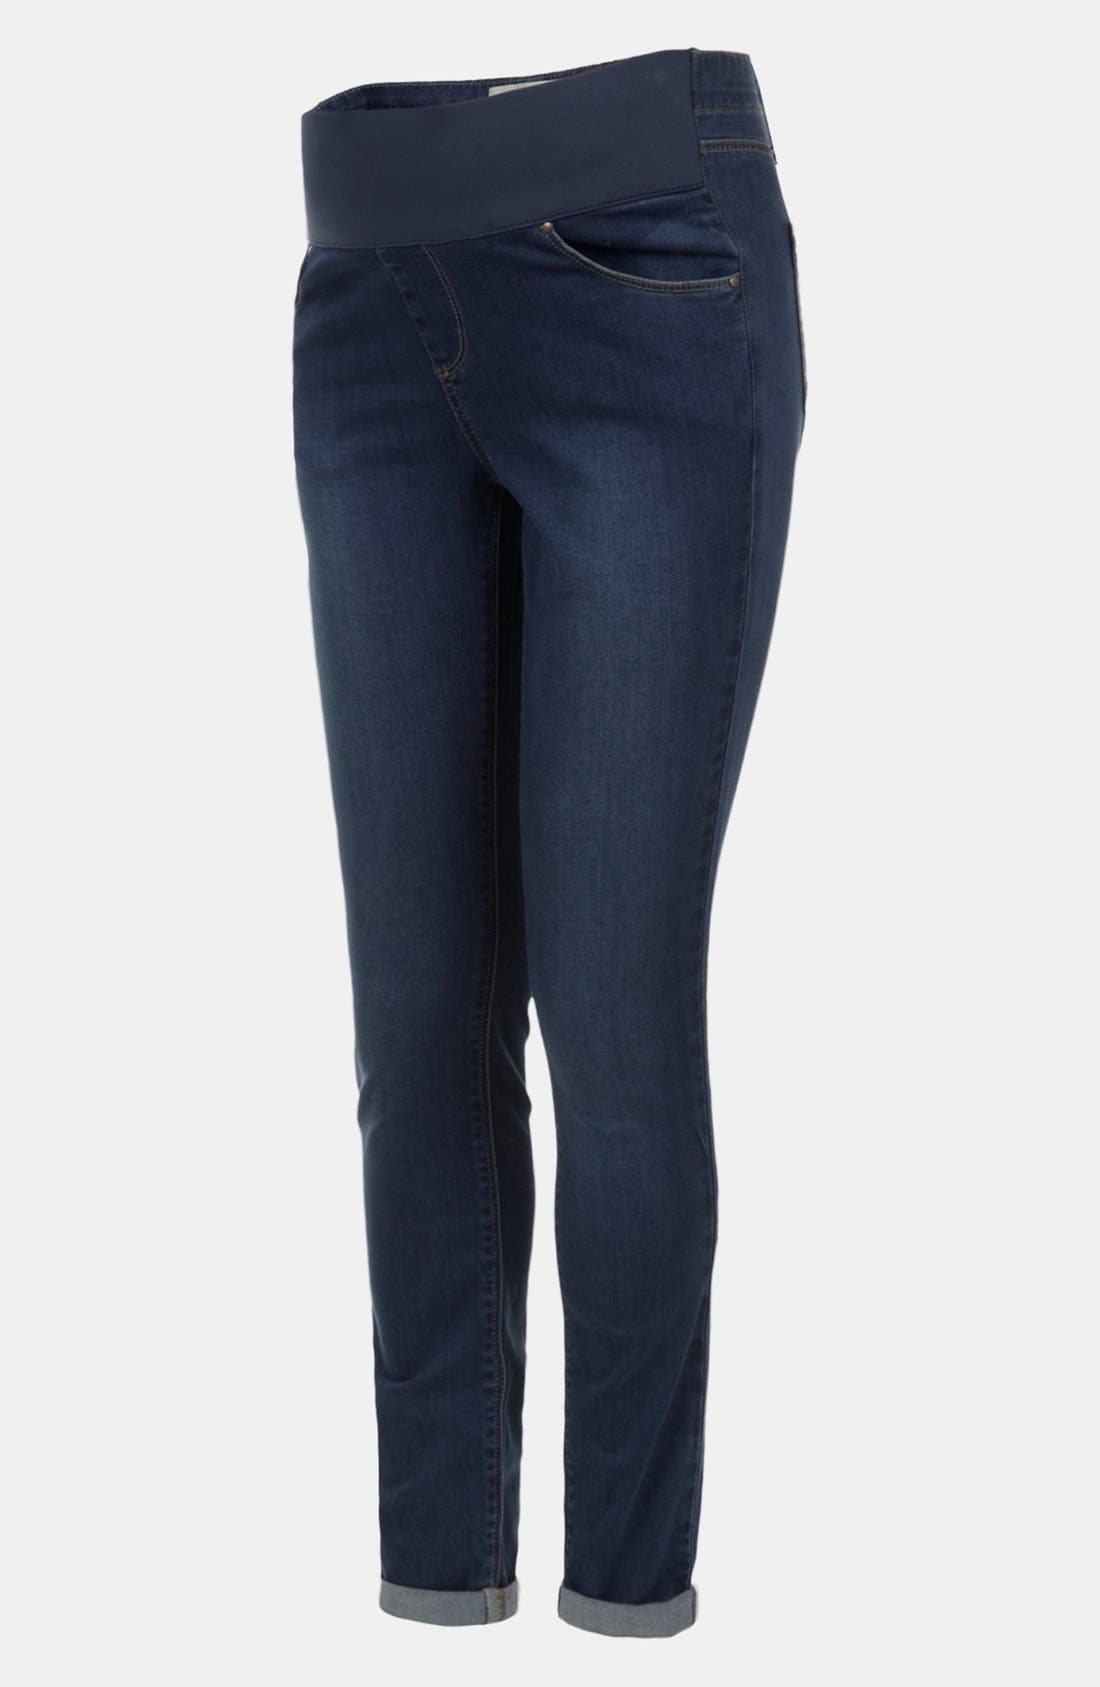 levi's men's 522 slim taper jeans